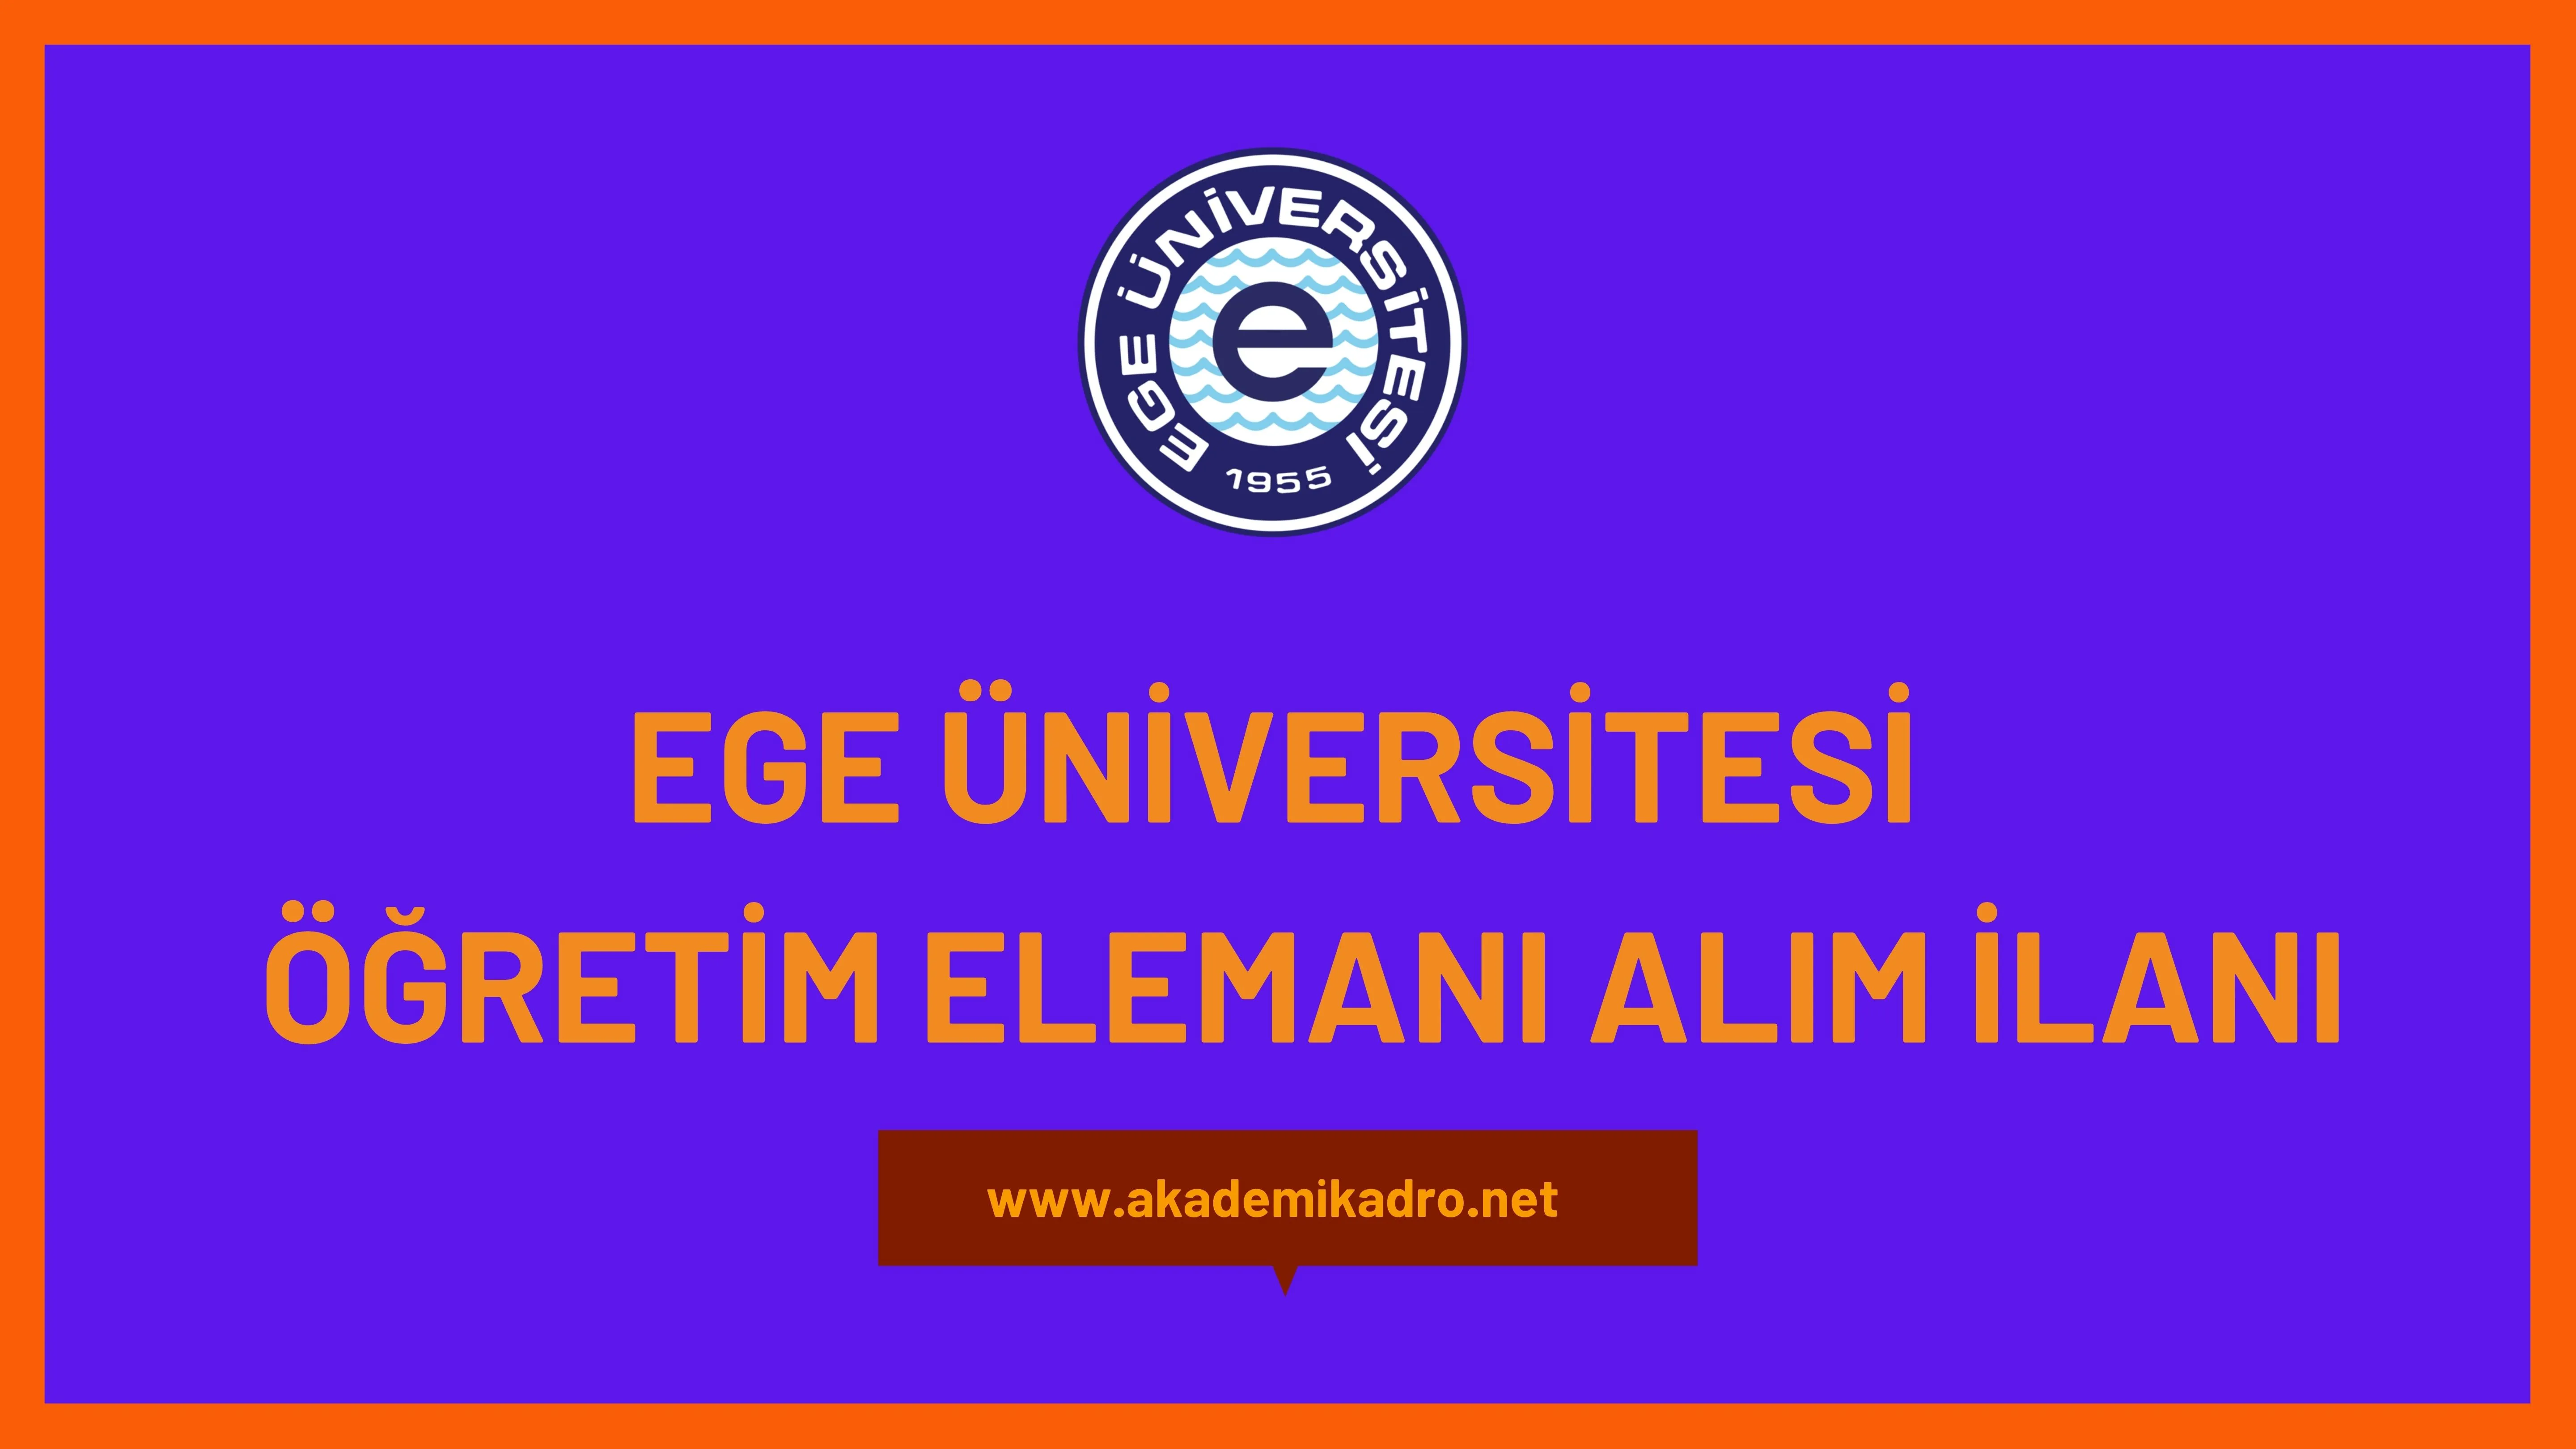 Ege Üniversitesi 6 Araştırma görevlisi ve 7 Öğretim Görevlisi alacaktır. Son başvuru tarihi 02 Ocak 2023.